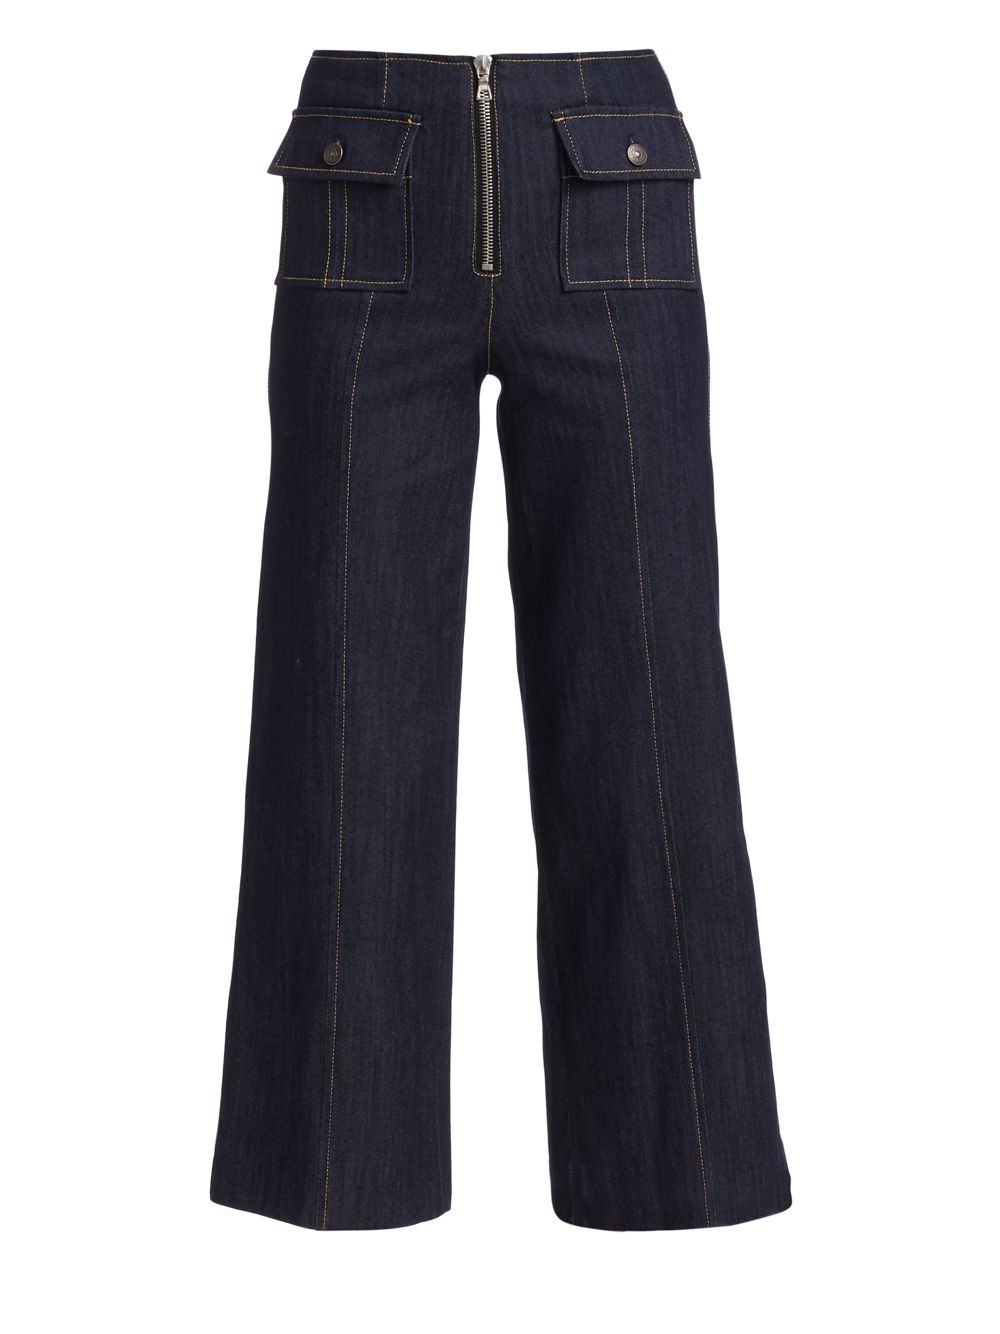 Широкие укороченные джинсы Azure с высокой посадкой спереди Cinq à Sept, индиго джинсы francine с высокой посадкой цвета индиго cinq à sept цвет blue